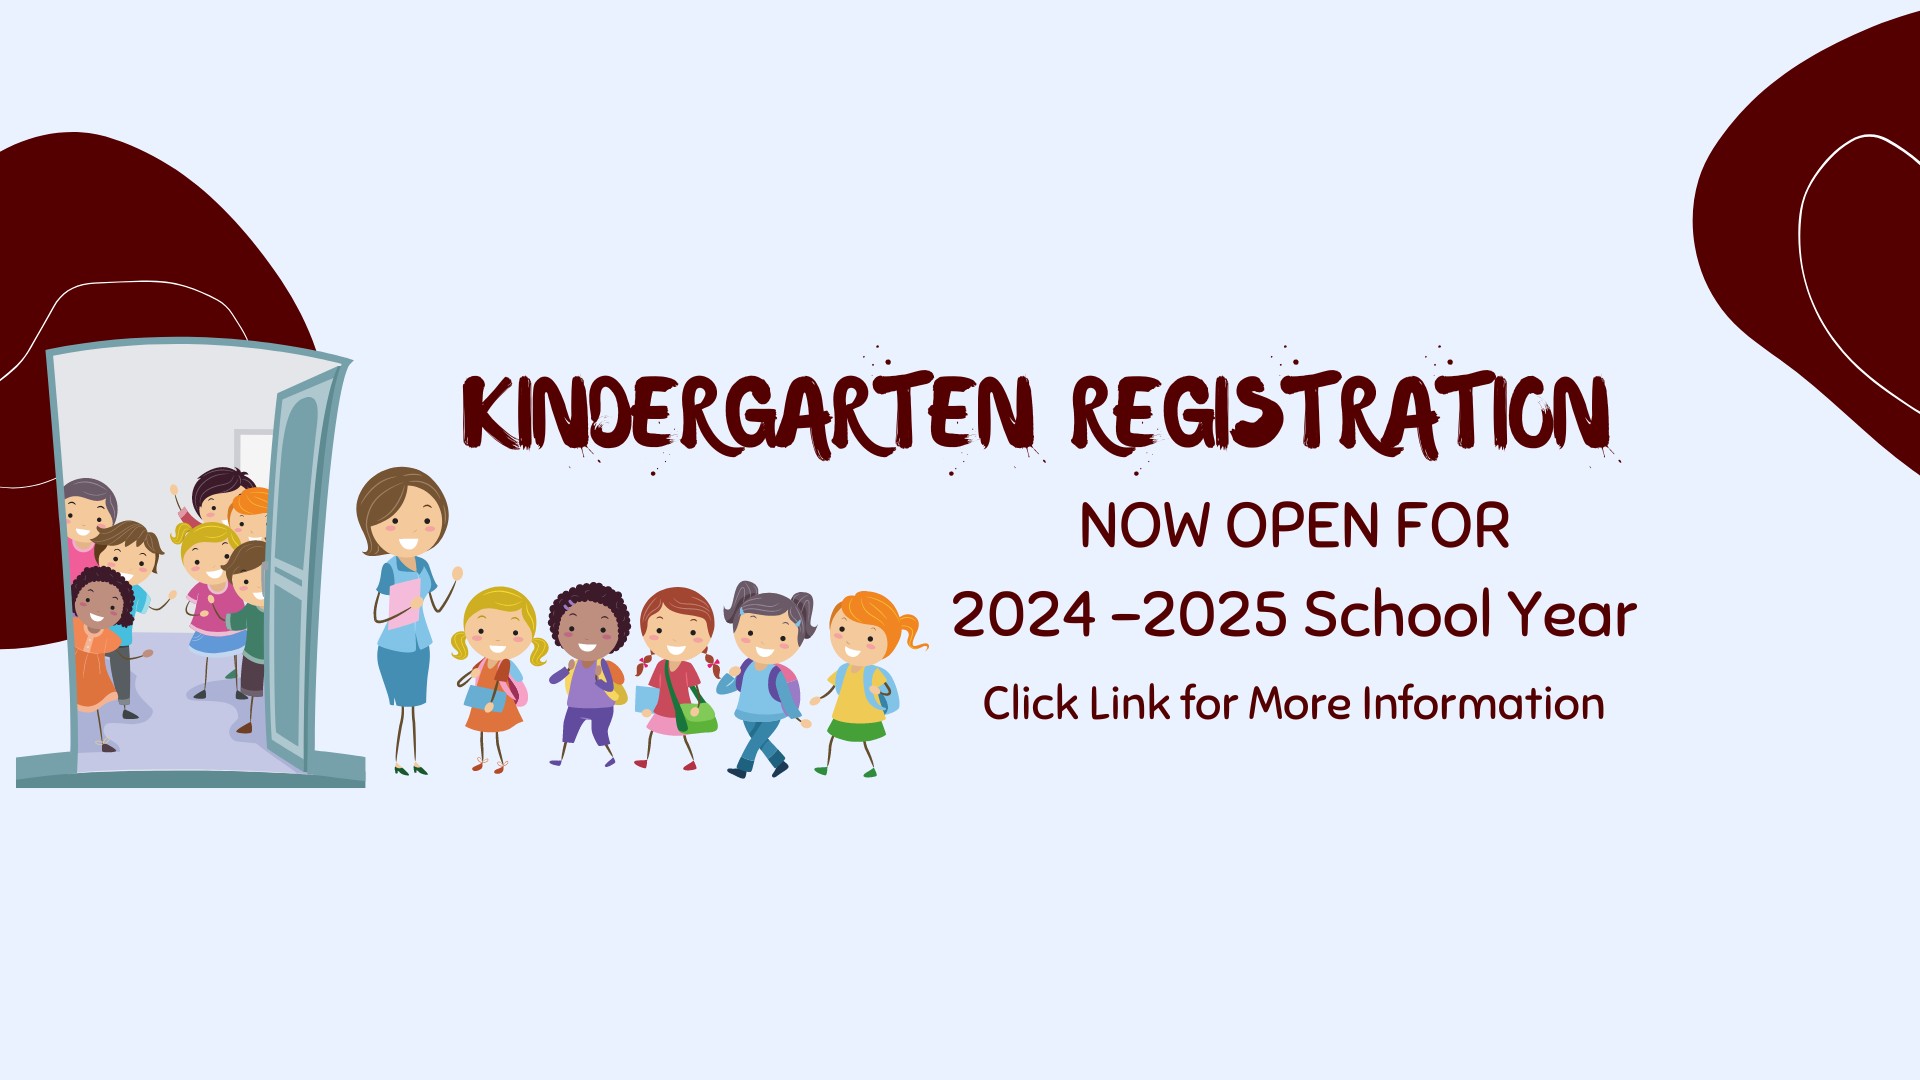 Kindergarten registration is now open.